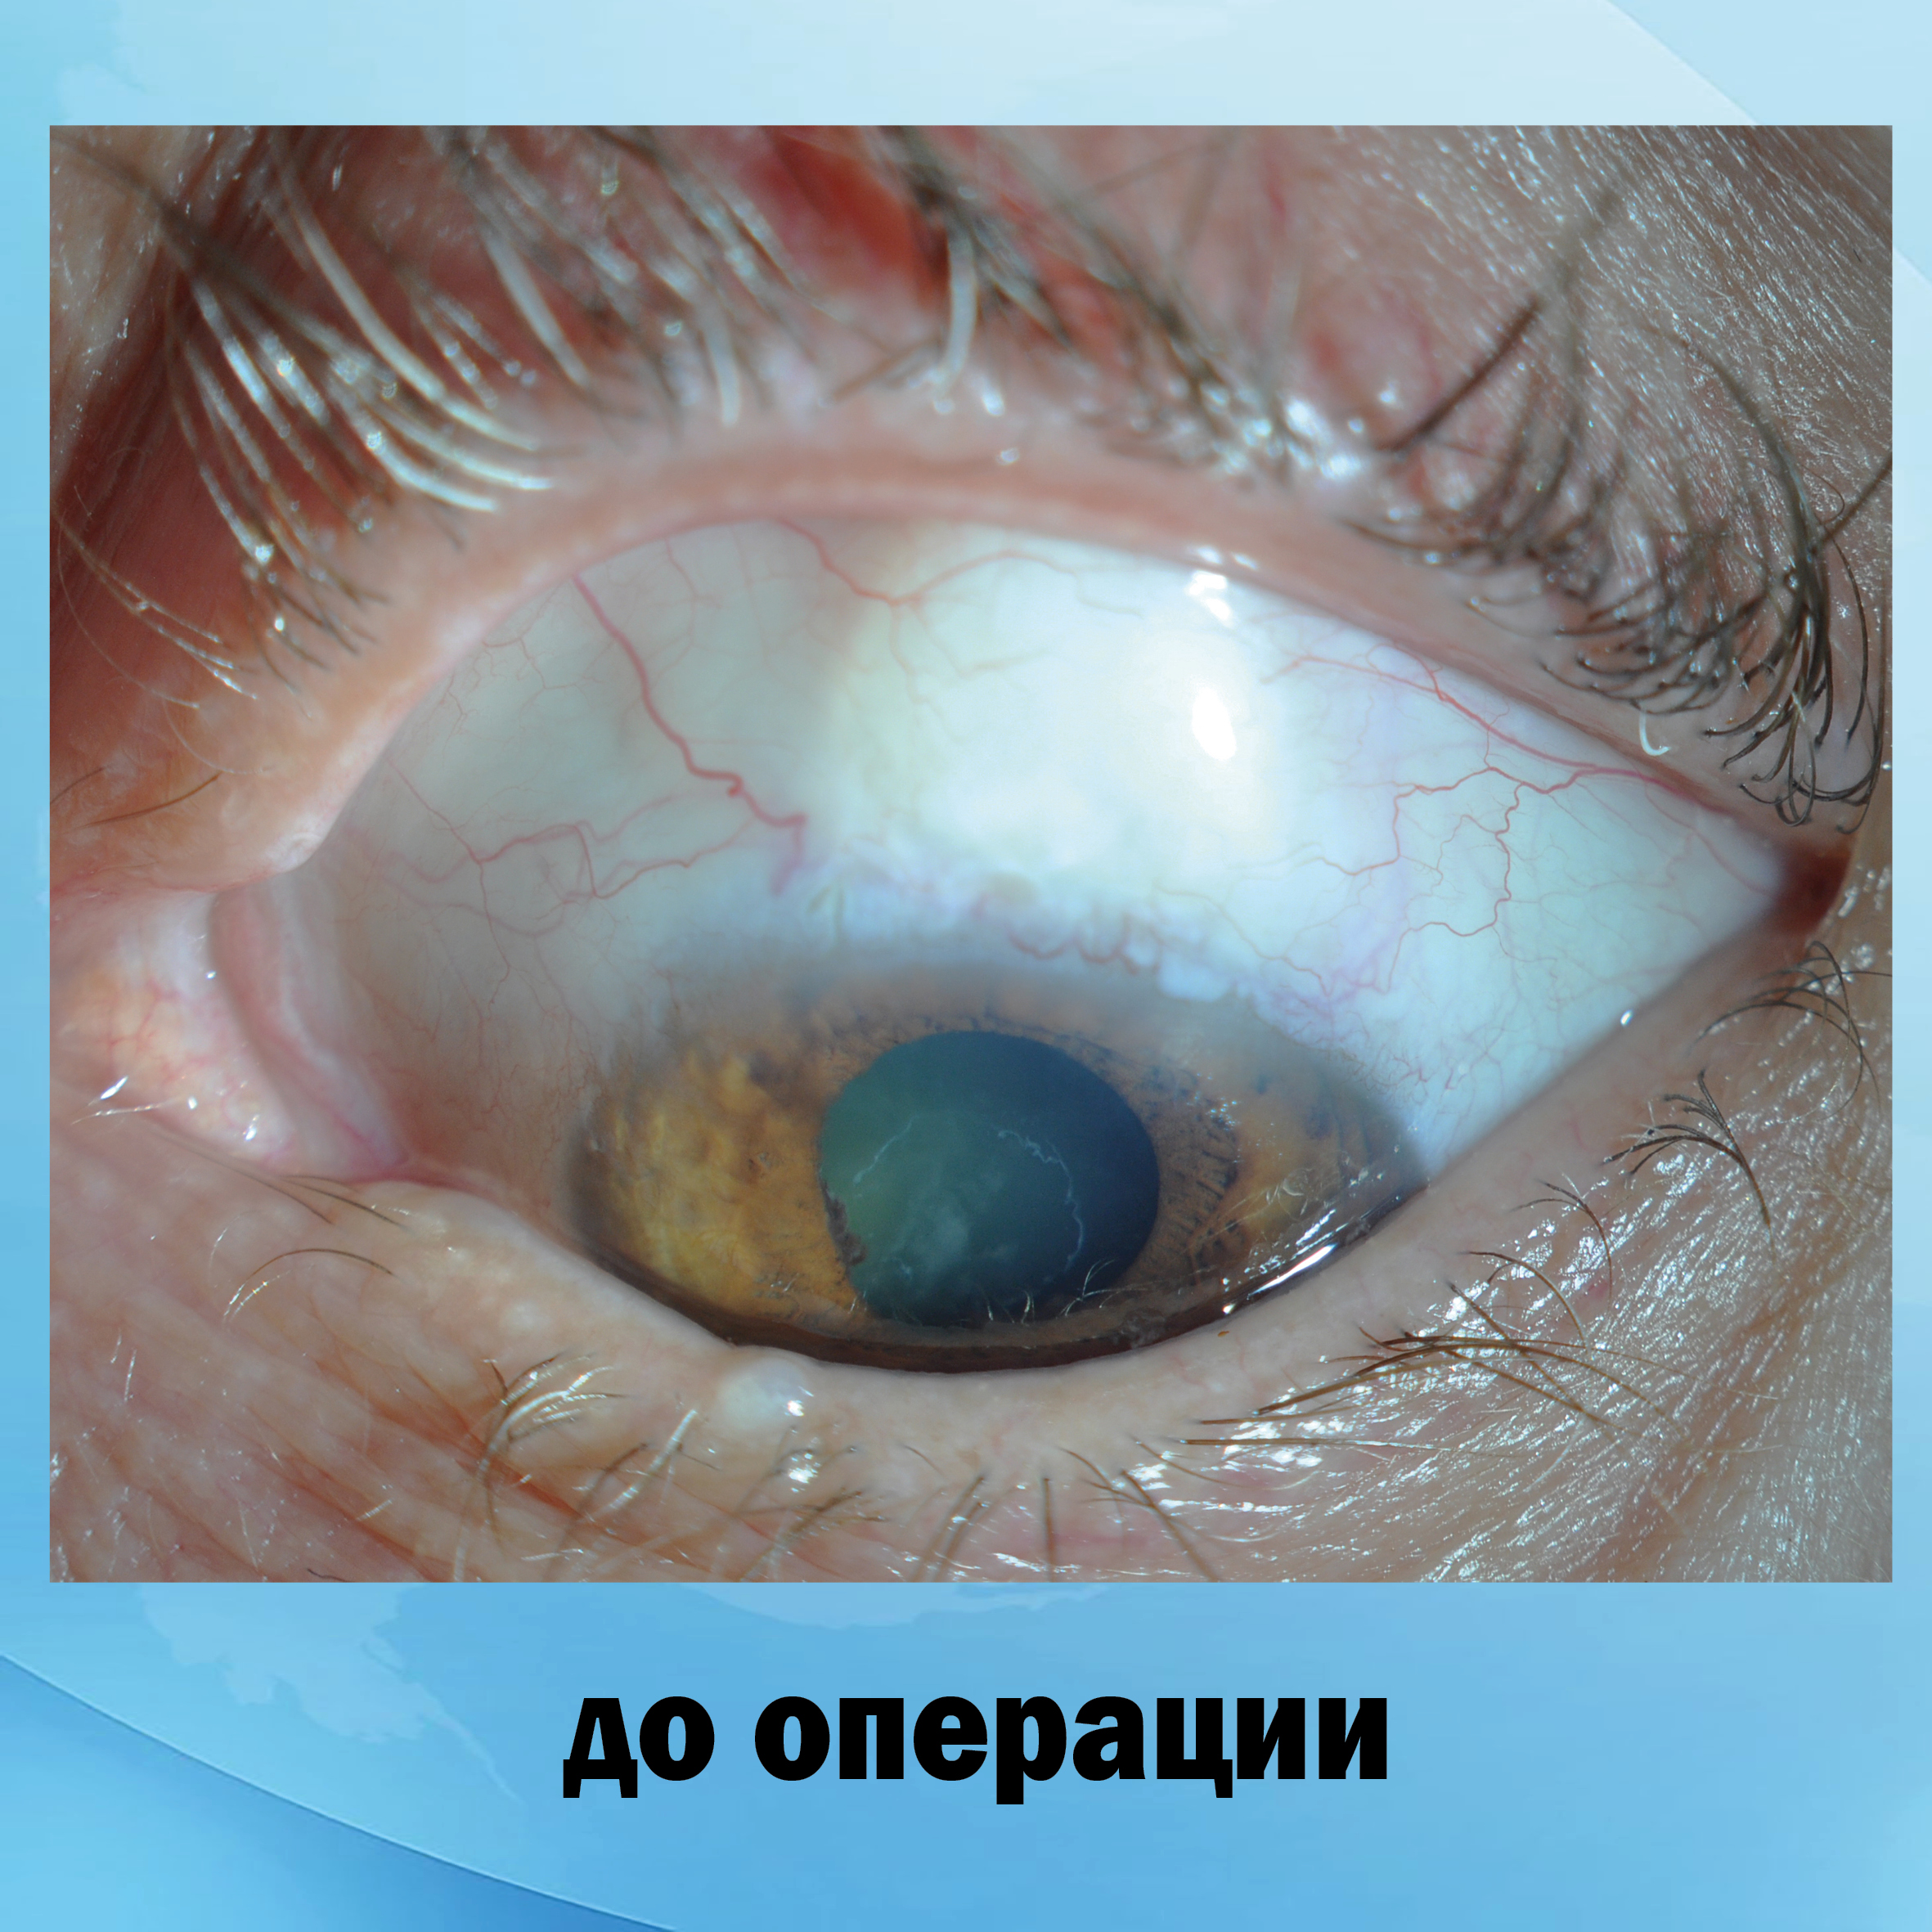 Оперированная глаукома левого глаза